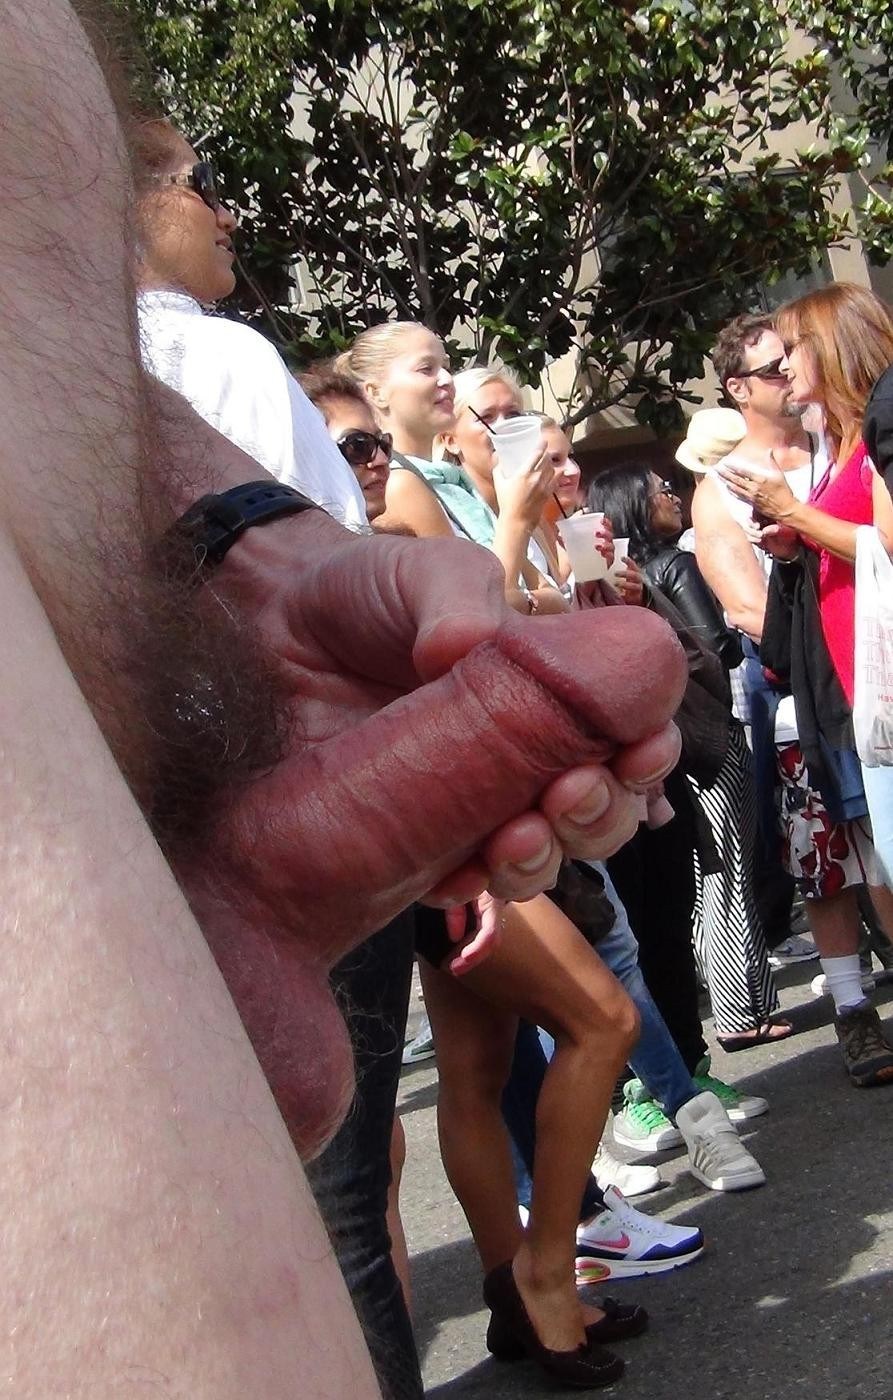 Girls touching cock in public